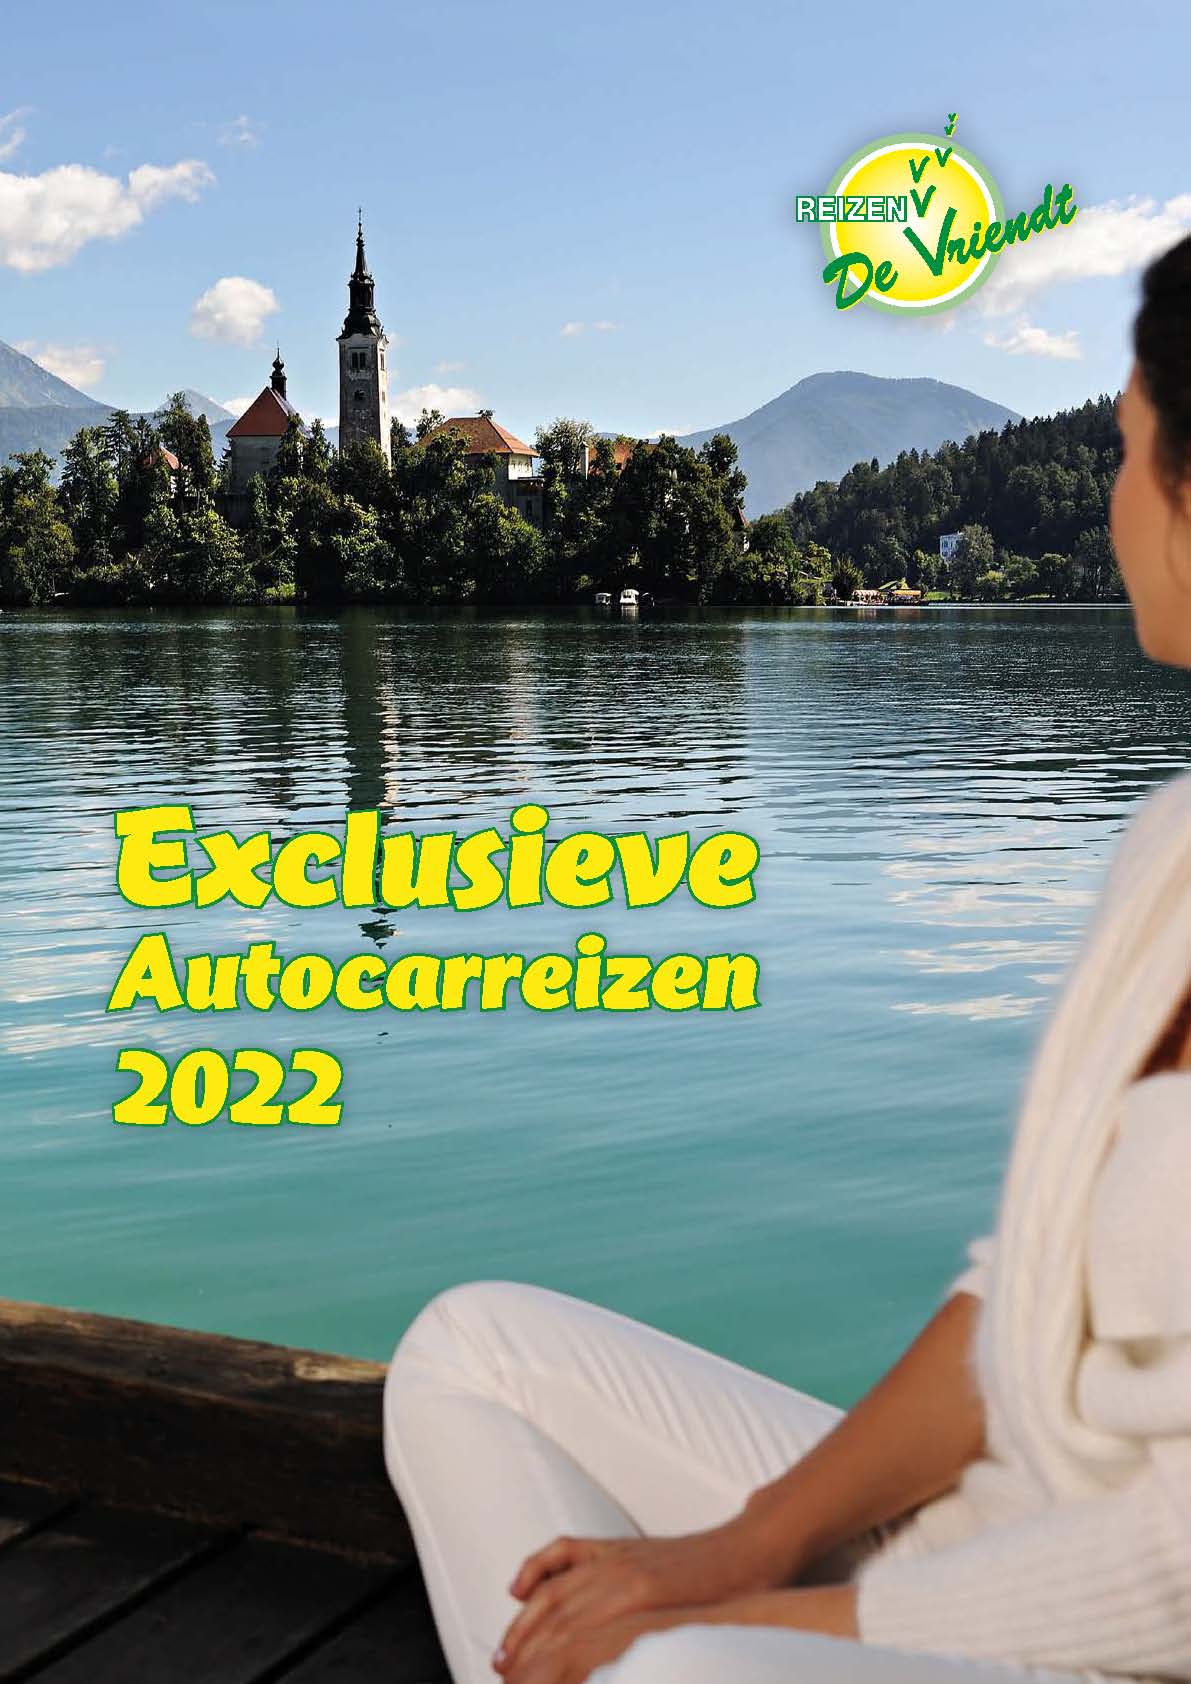 Catalogus 2022 LR - Reizen De Vriendt - Cover page